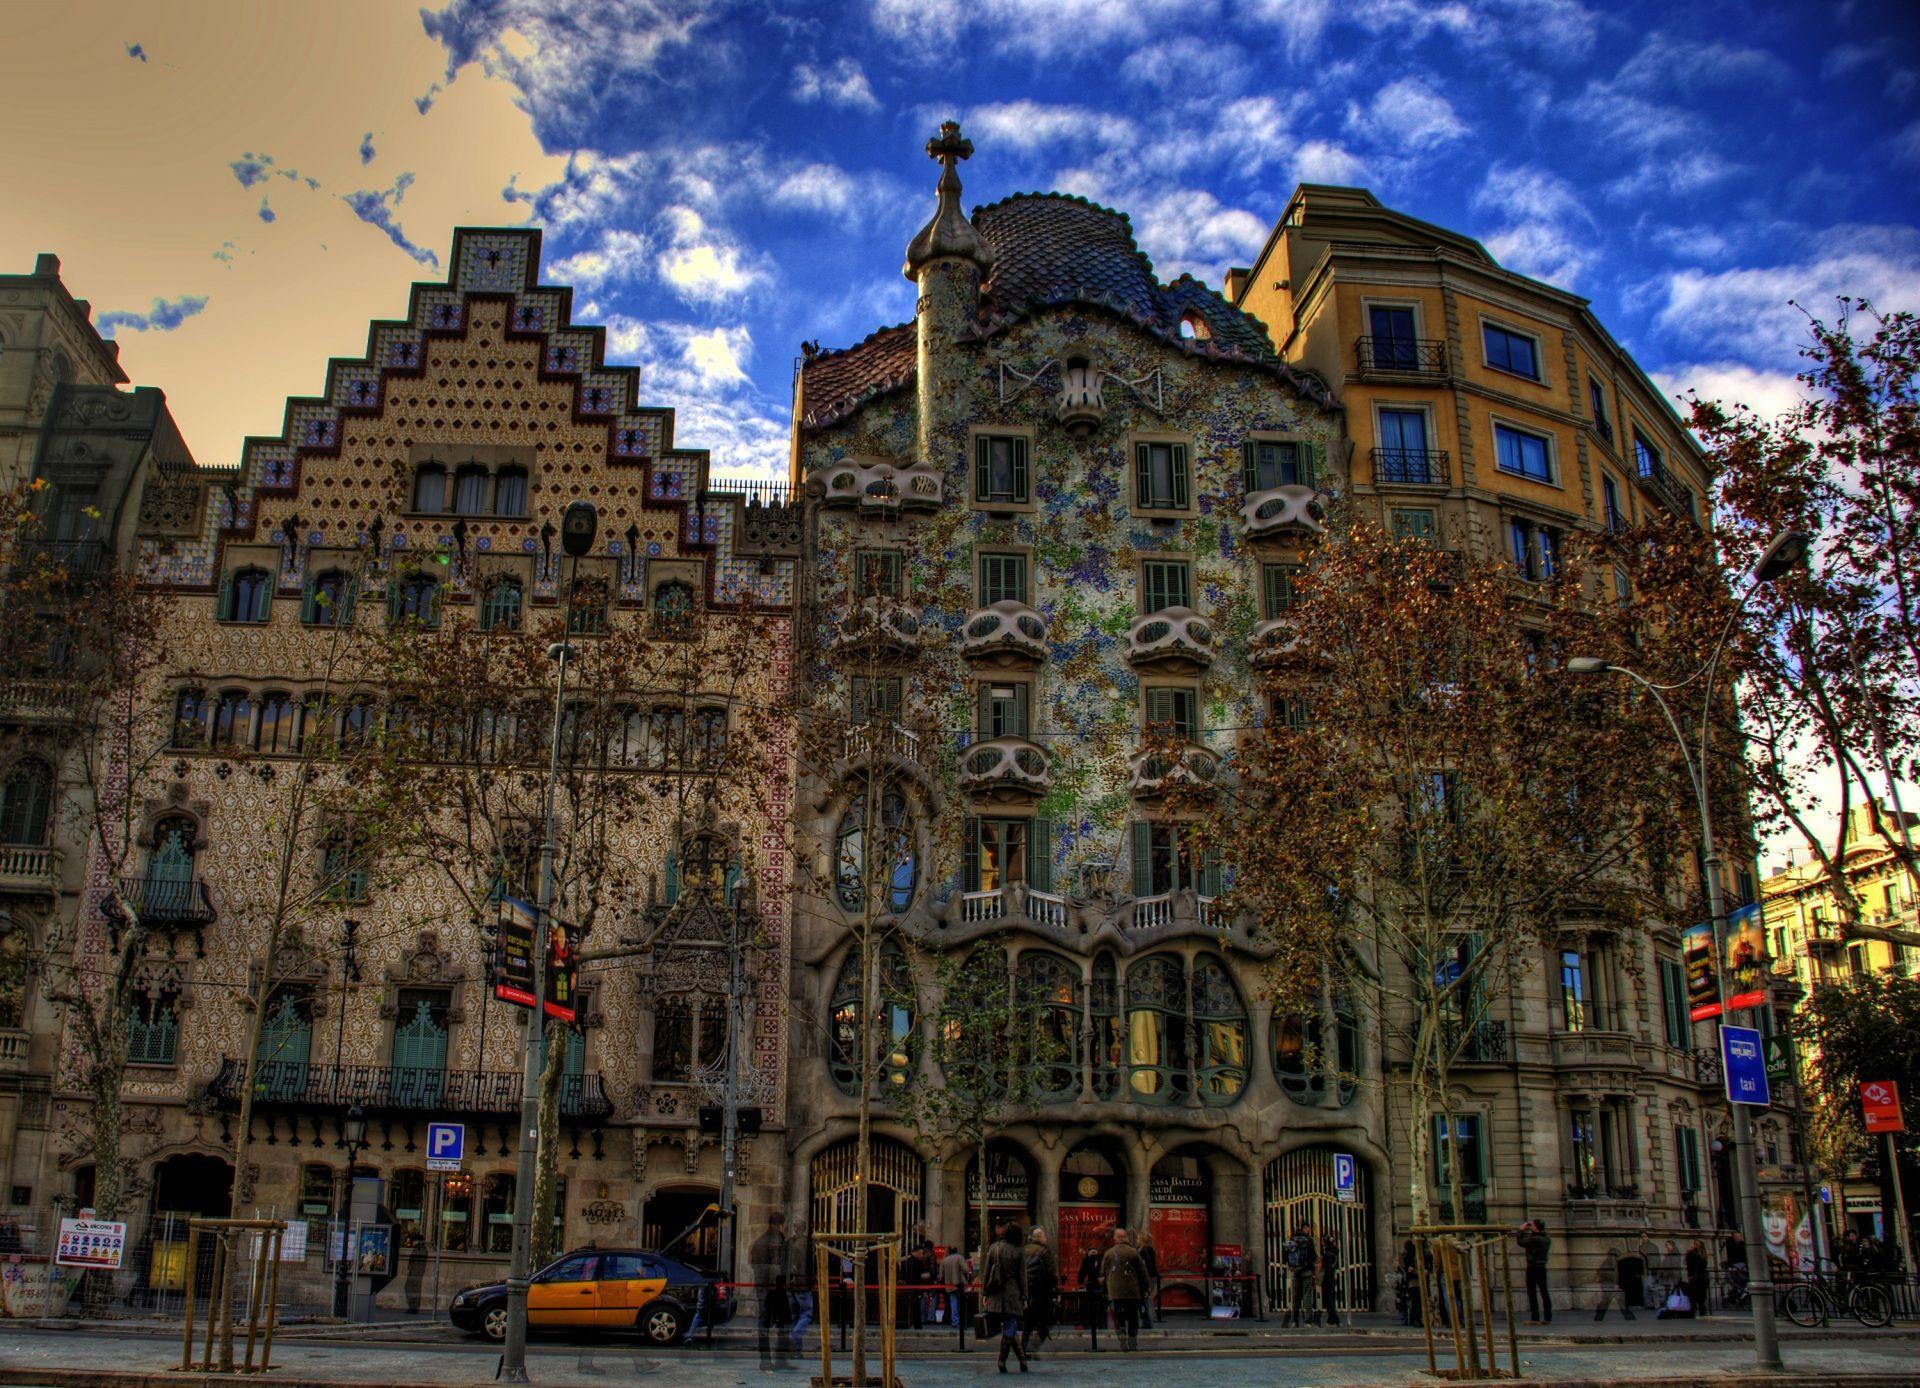 City of Barcelona, Spain Computer Wallpaper, Desktop Background